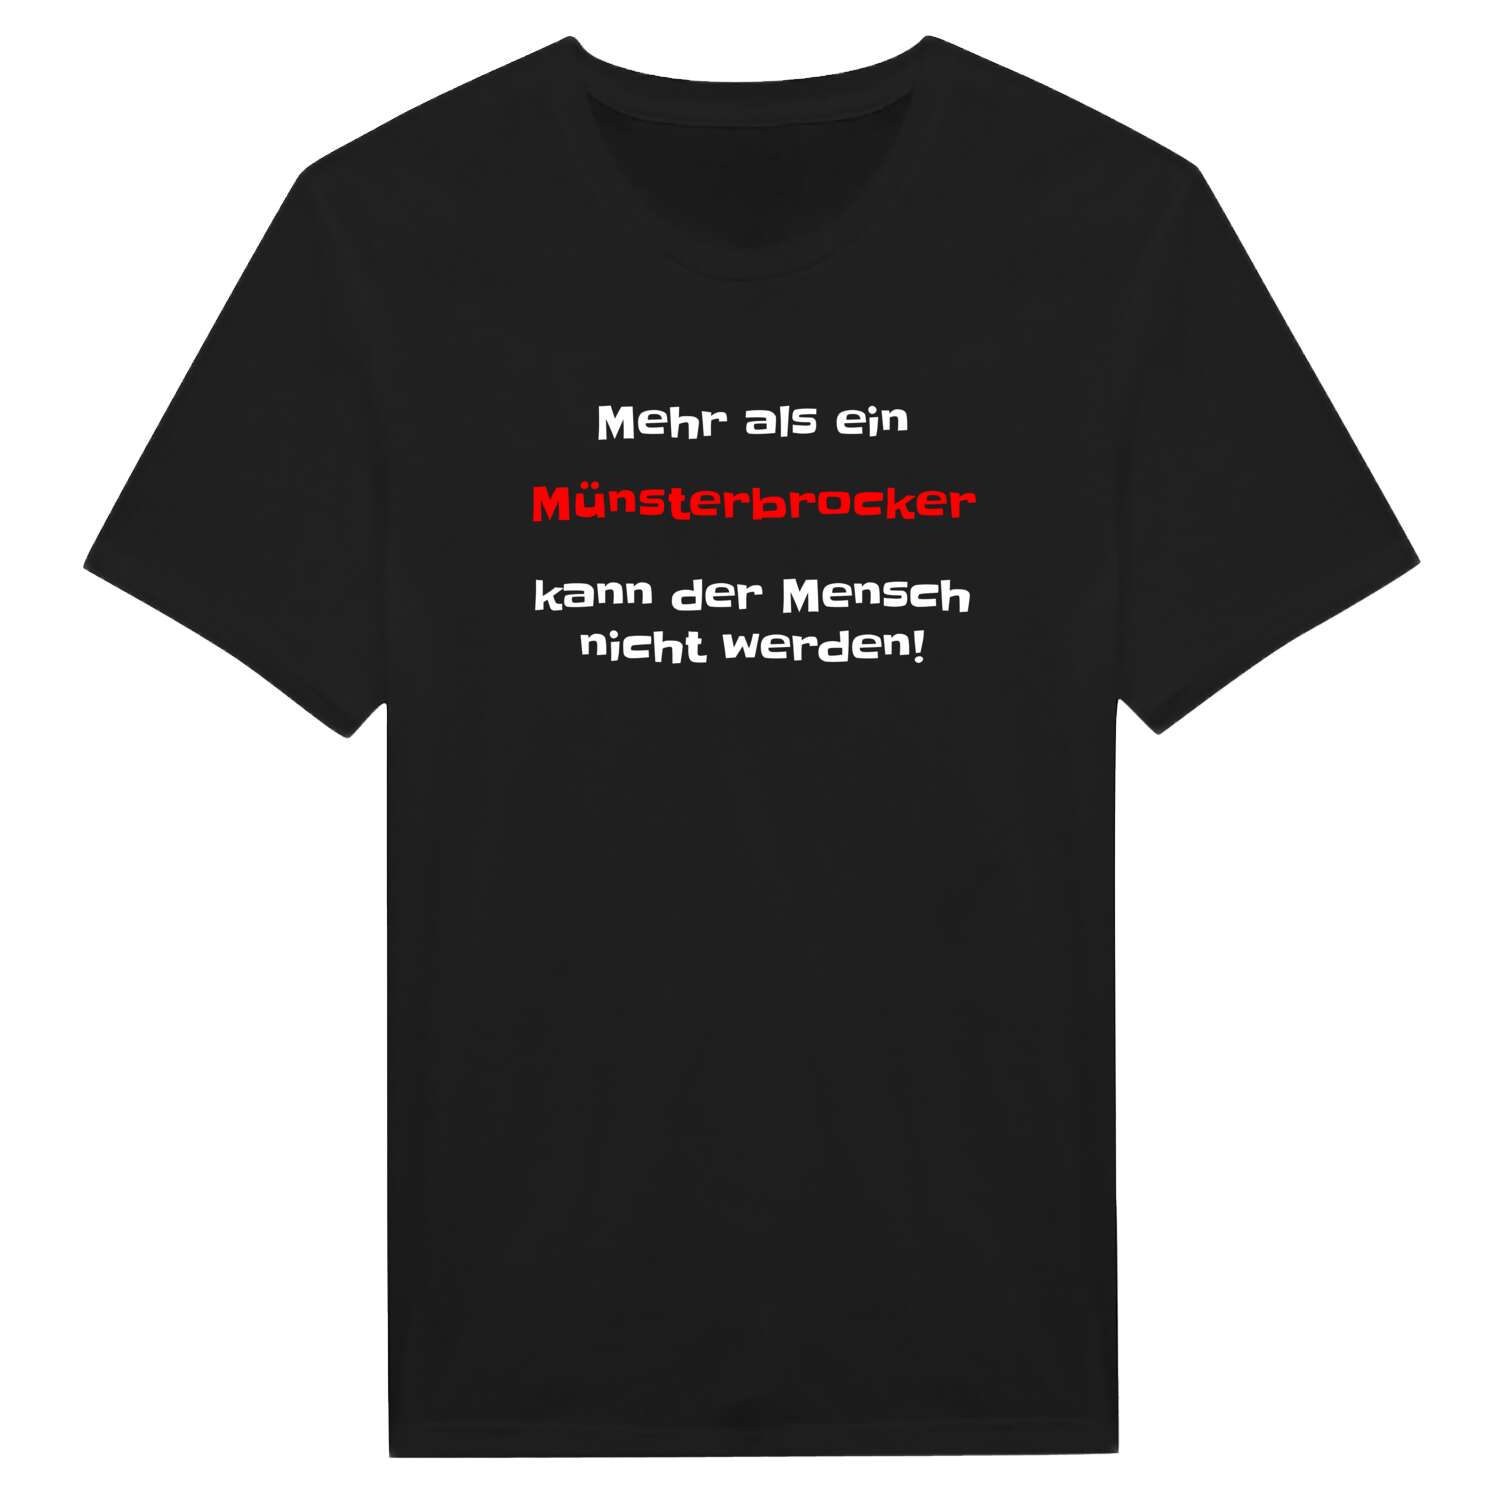 Münsterbrock T-Shirt »Mehr als ein«